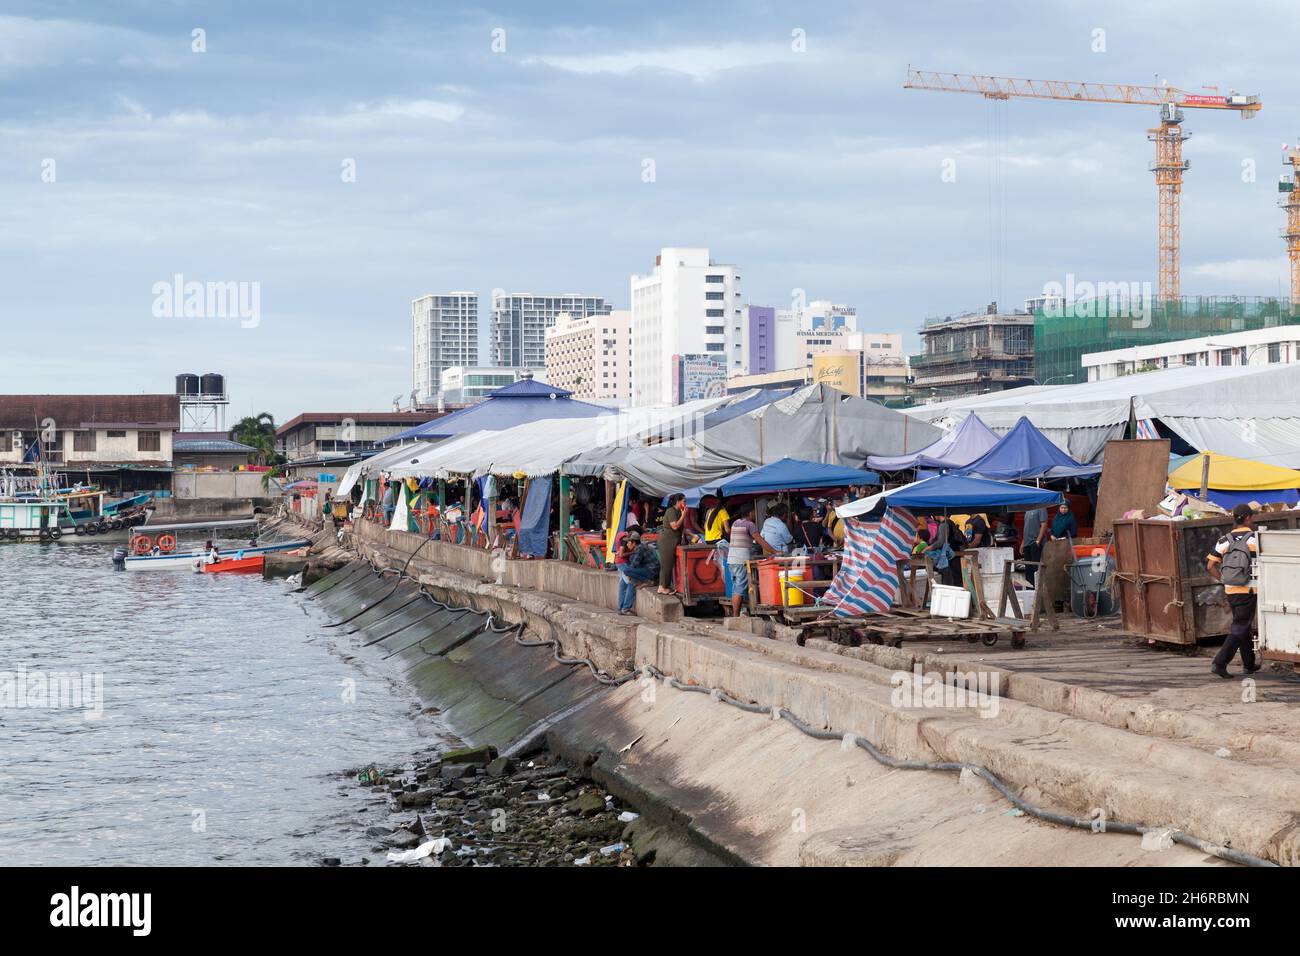 Kota Kinabalu, Malesia - 23 marzo 2019: Vista sul mare del mercato del pesce KK in una giornata di sole, la gente comune visita il mercato Foto Stock